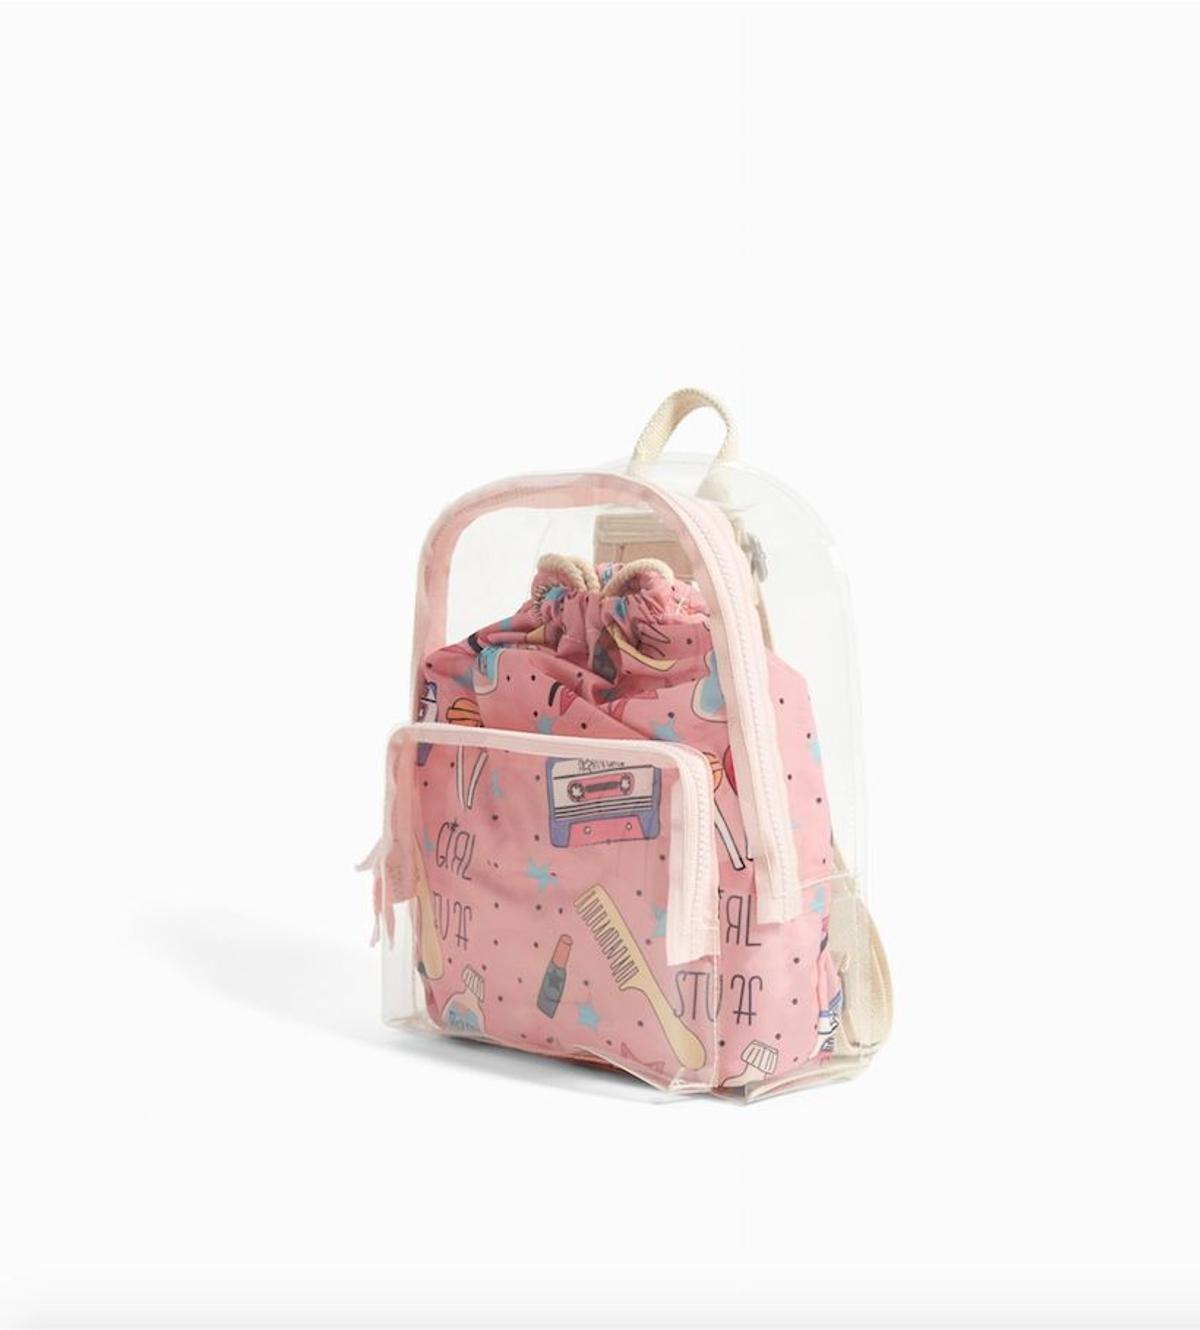 Nuevo objeto de deseo: los bolsos de niño de Zara